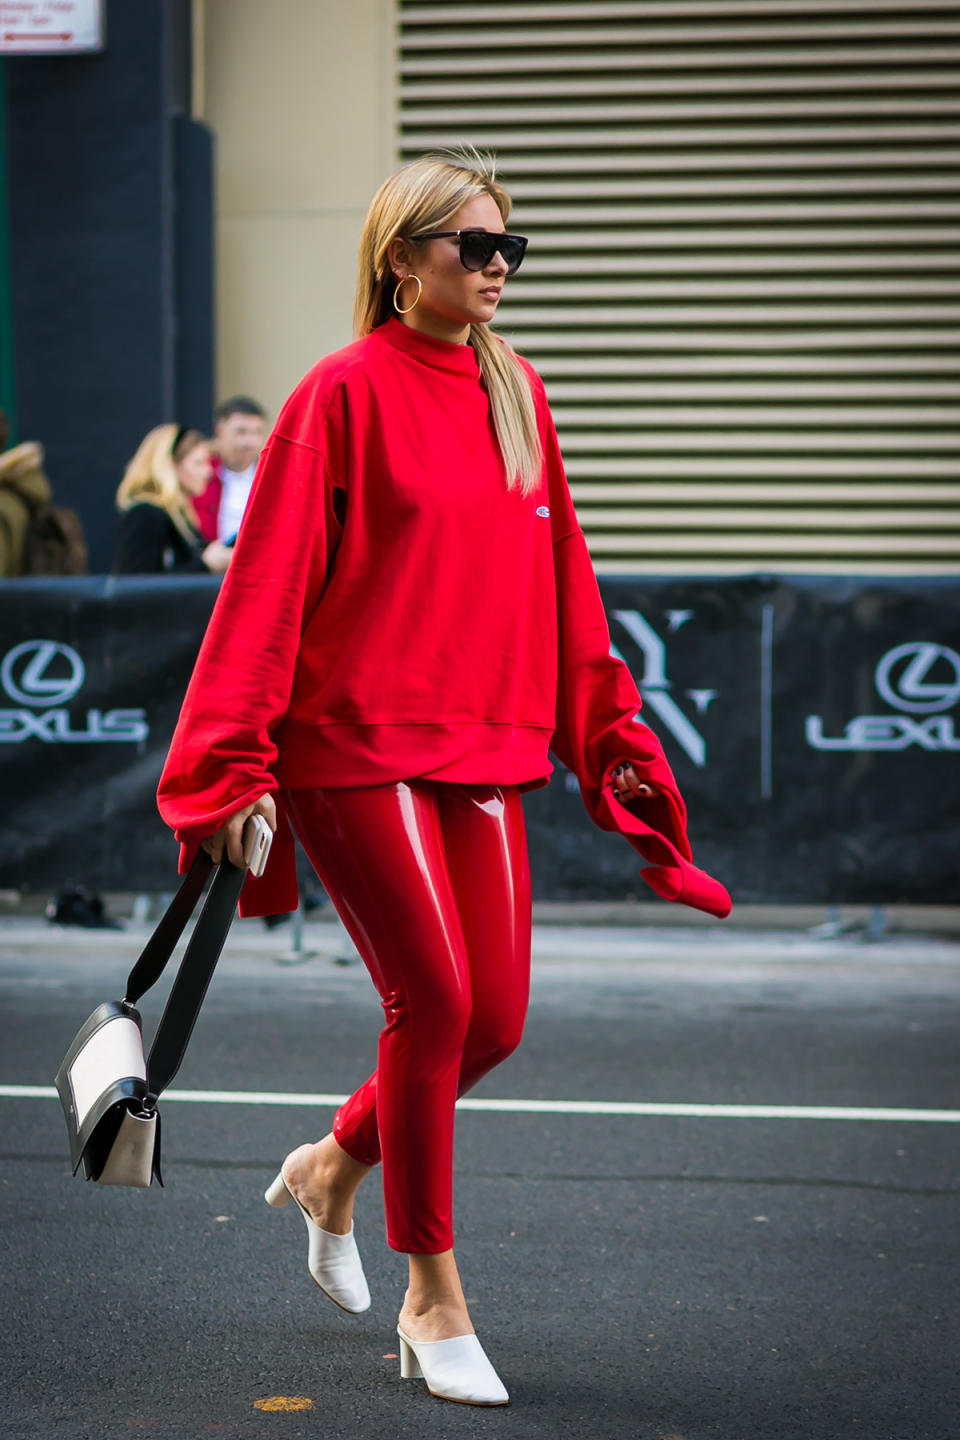 We Wore What blogger Danielle Bernstein wears so much red at New York Fashion Week.